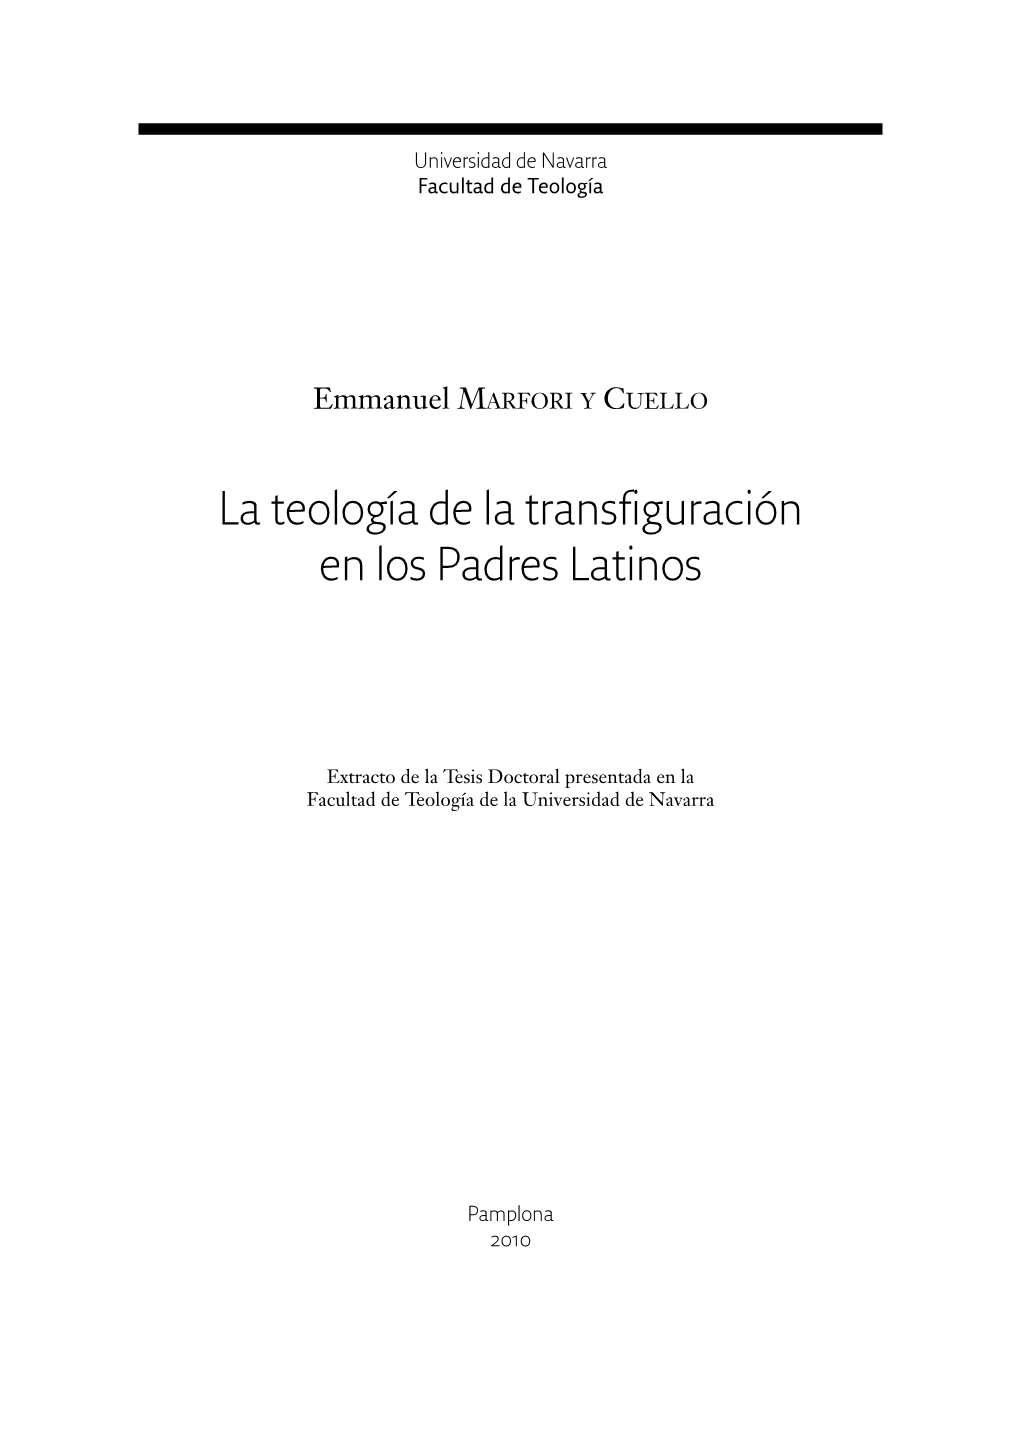 La Teología De La Transfiguración En Los Padres Latinos